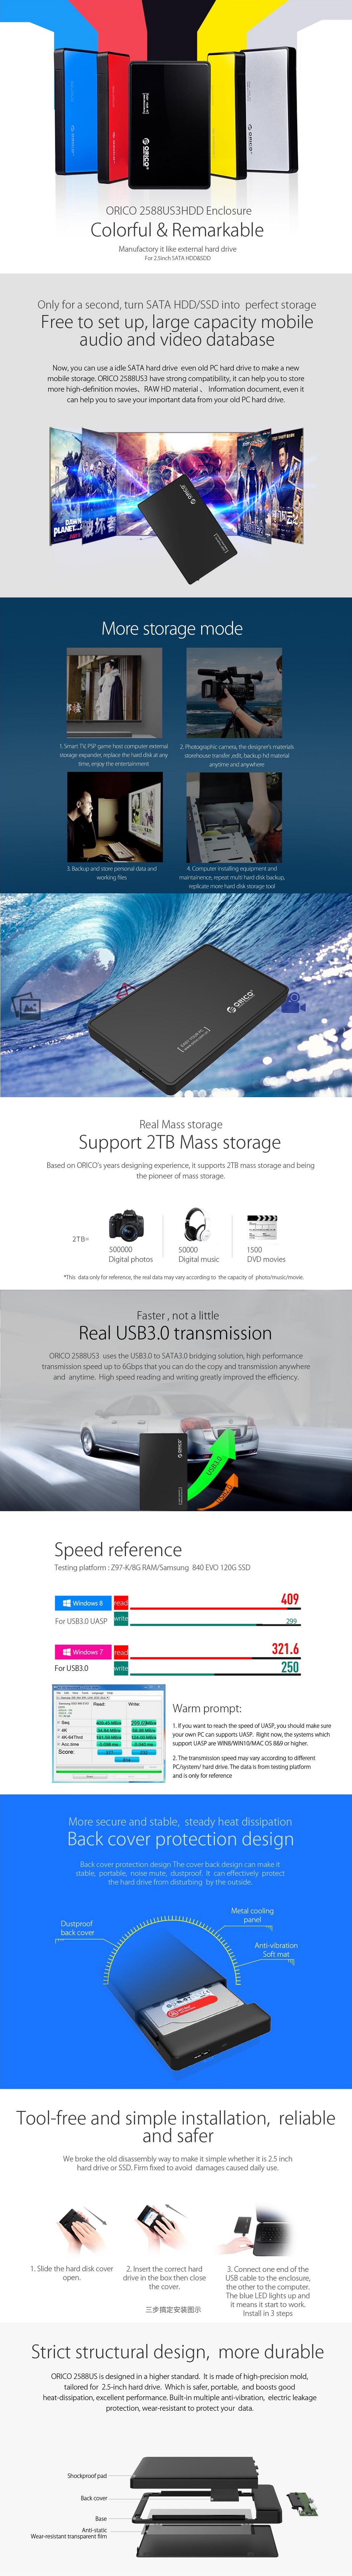 Orico 2588US3 USB 3.0 External 2.5